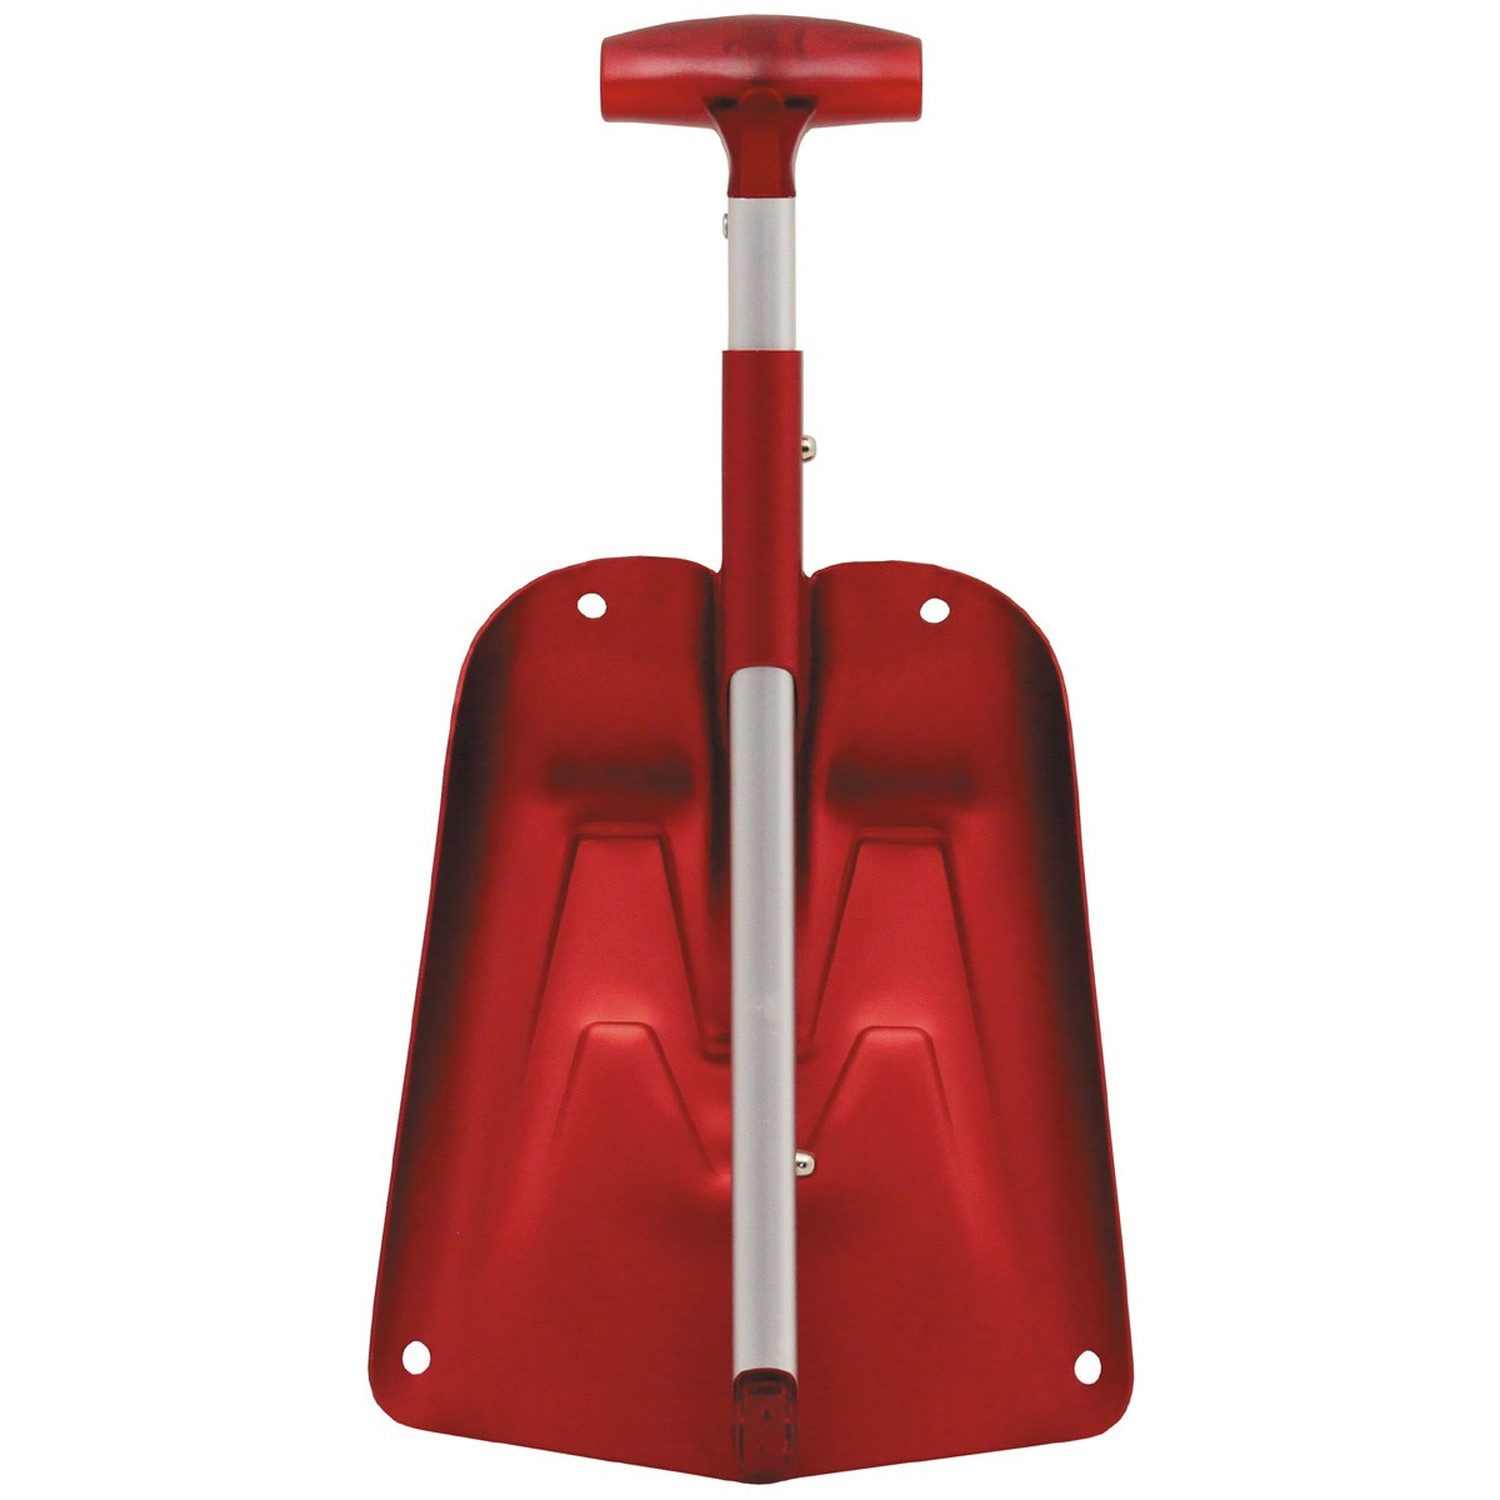 Schneeschaufel, ausziehbar, auffälliges Rot, aus Alu (Lawinenschaufel) -  Simigu Outdoor Equipment